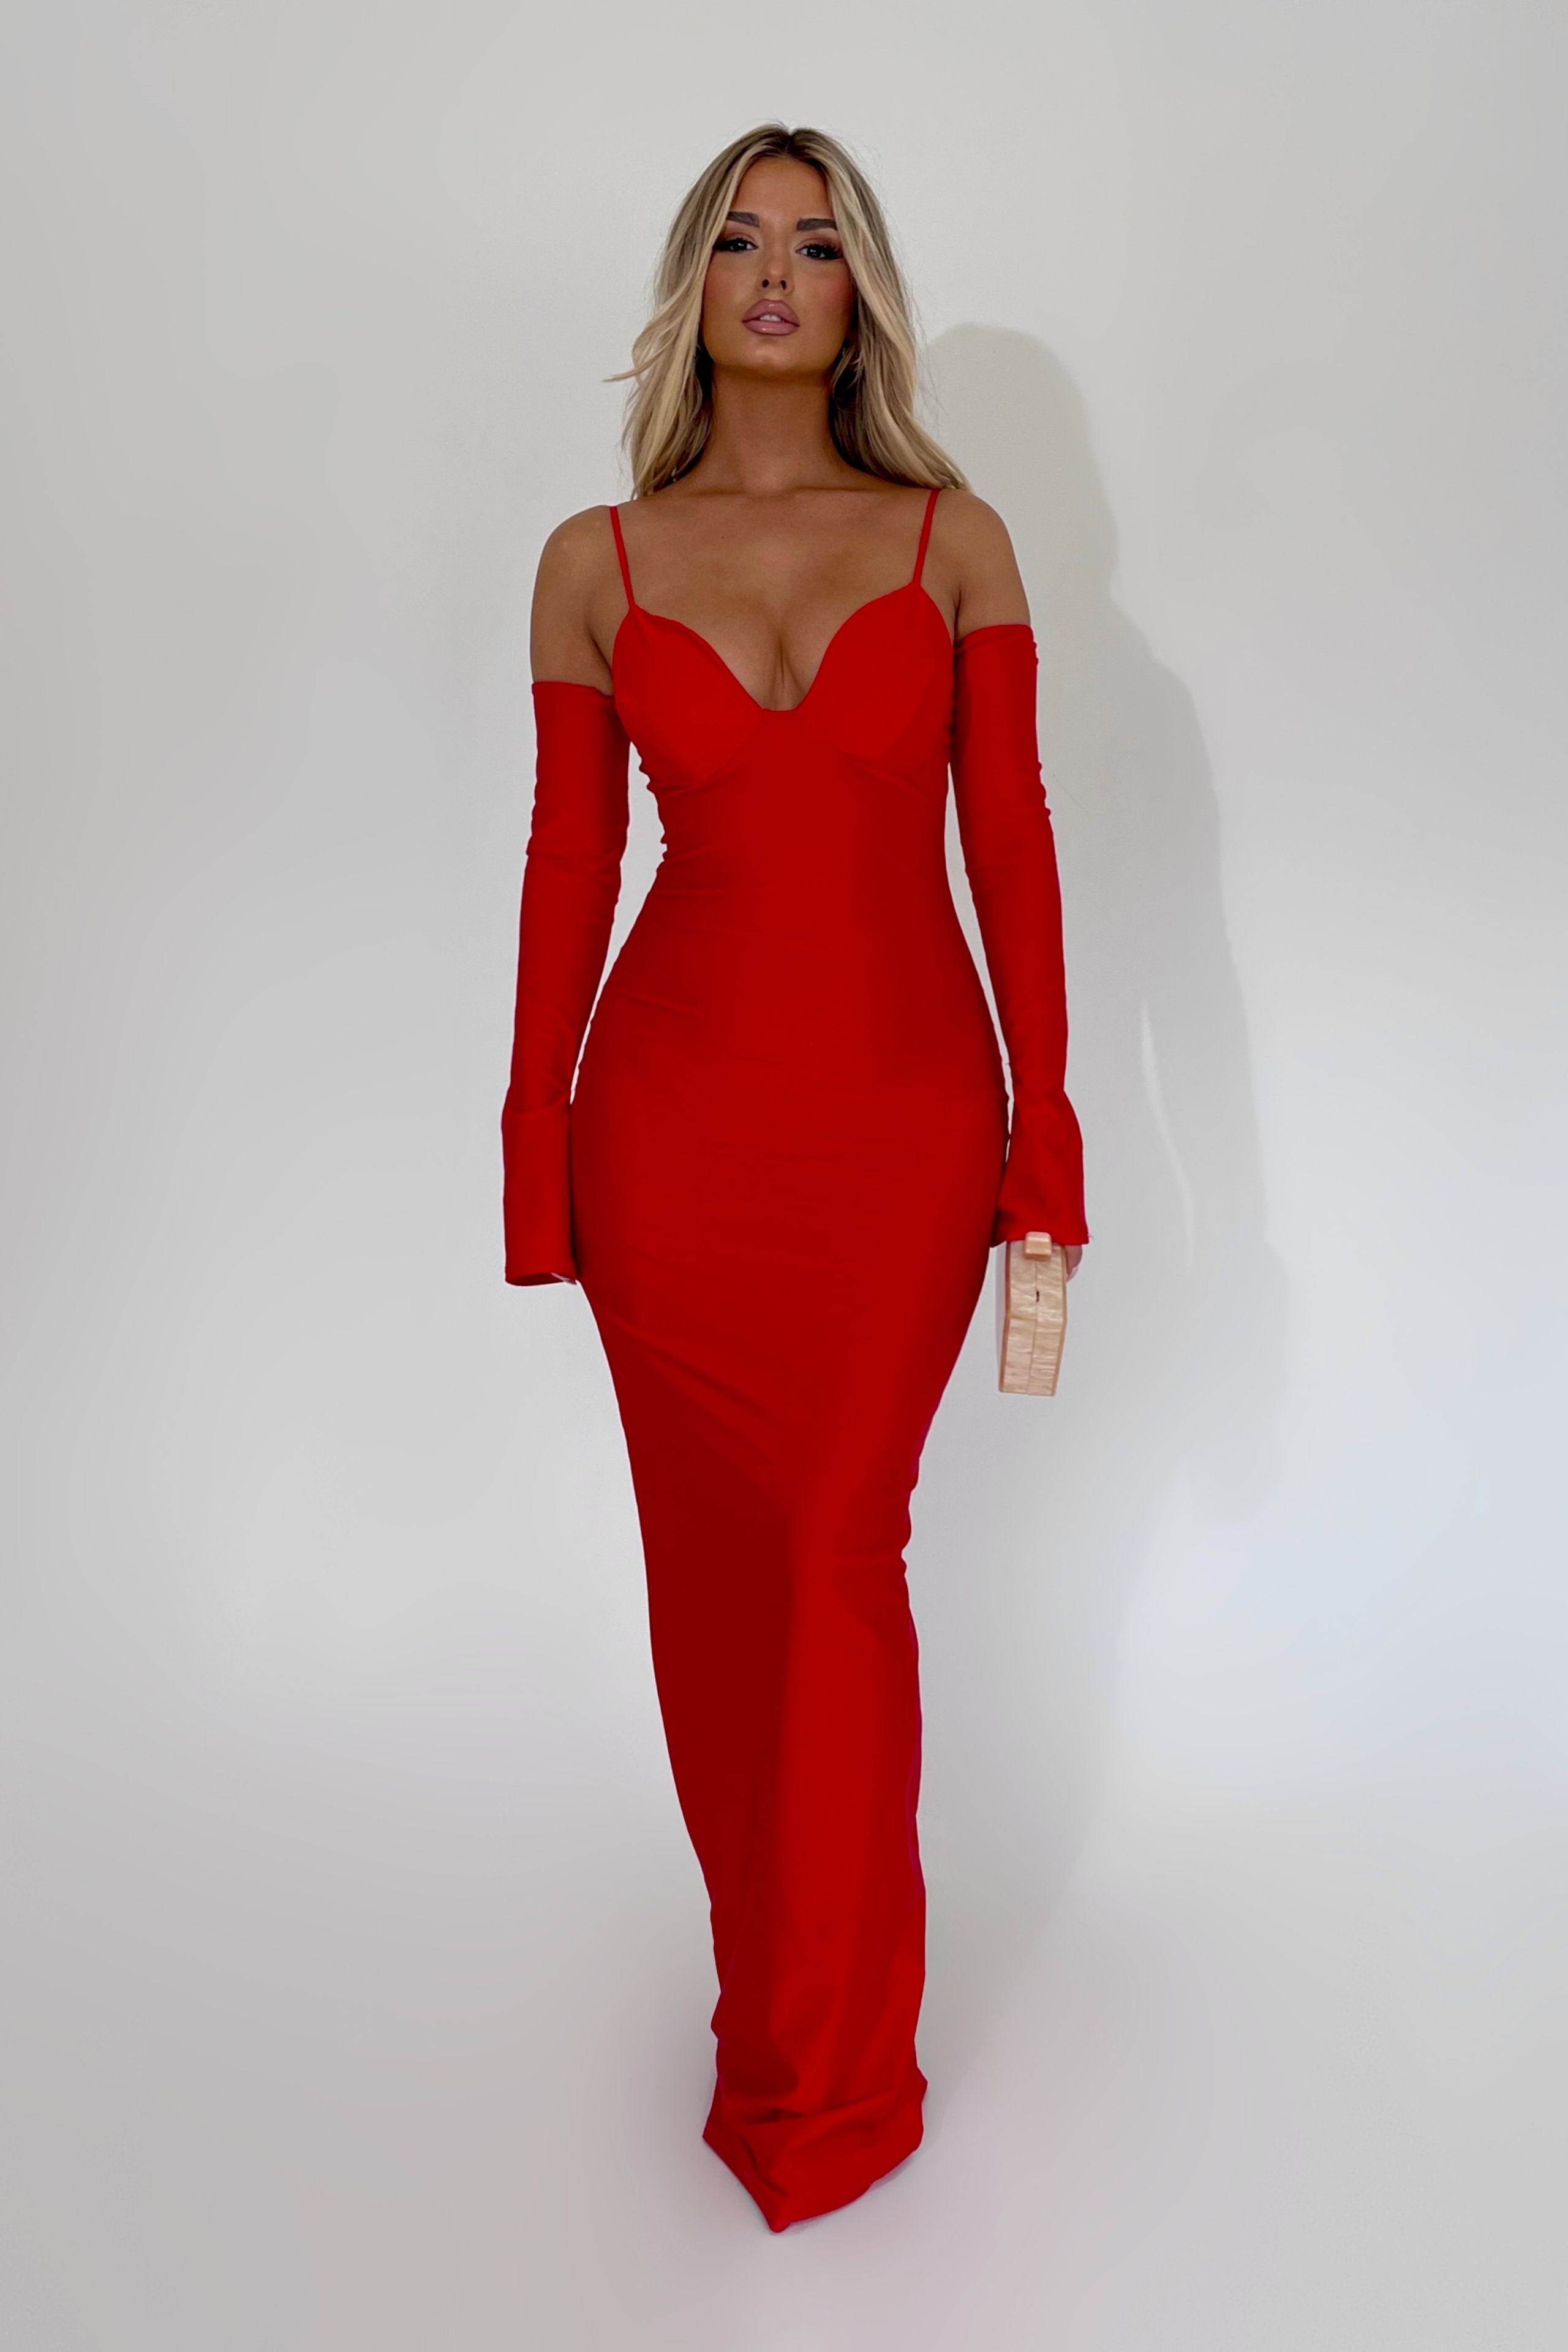 Sarah Hot Red Dress